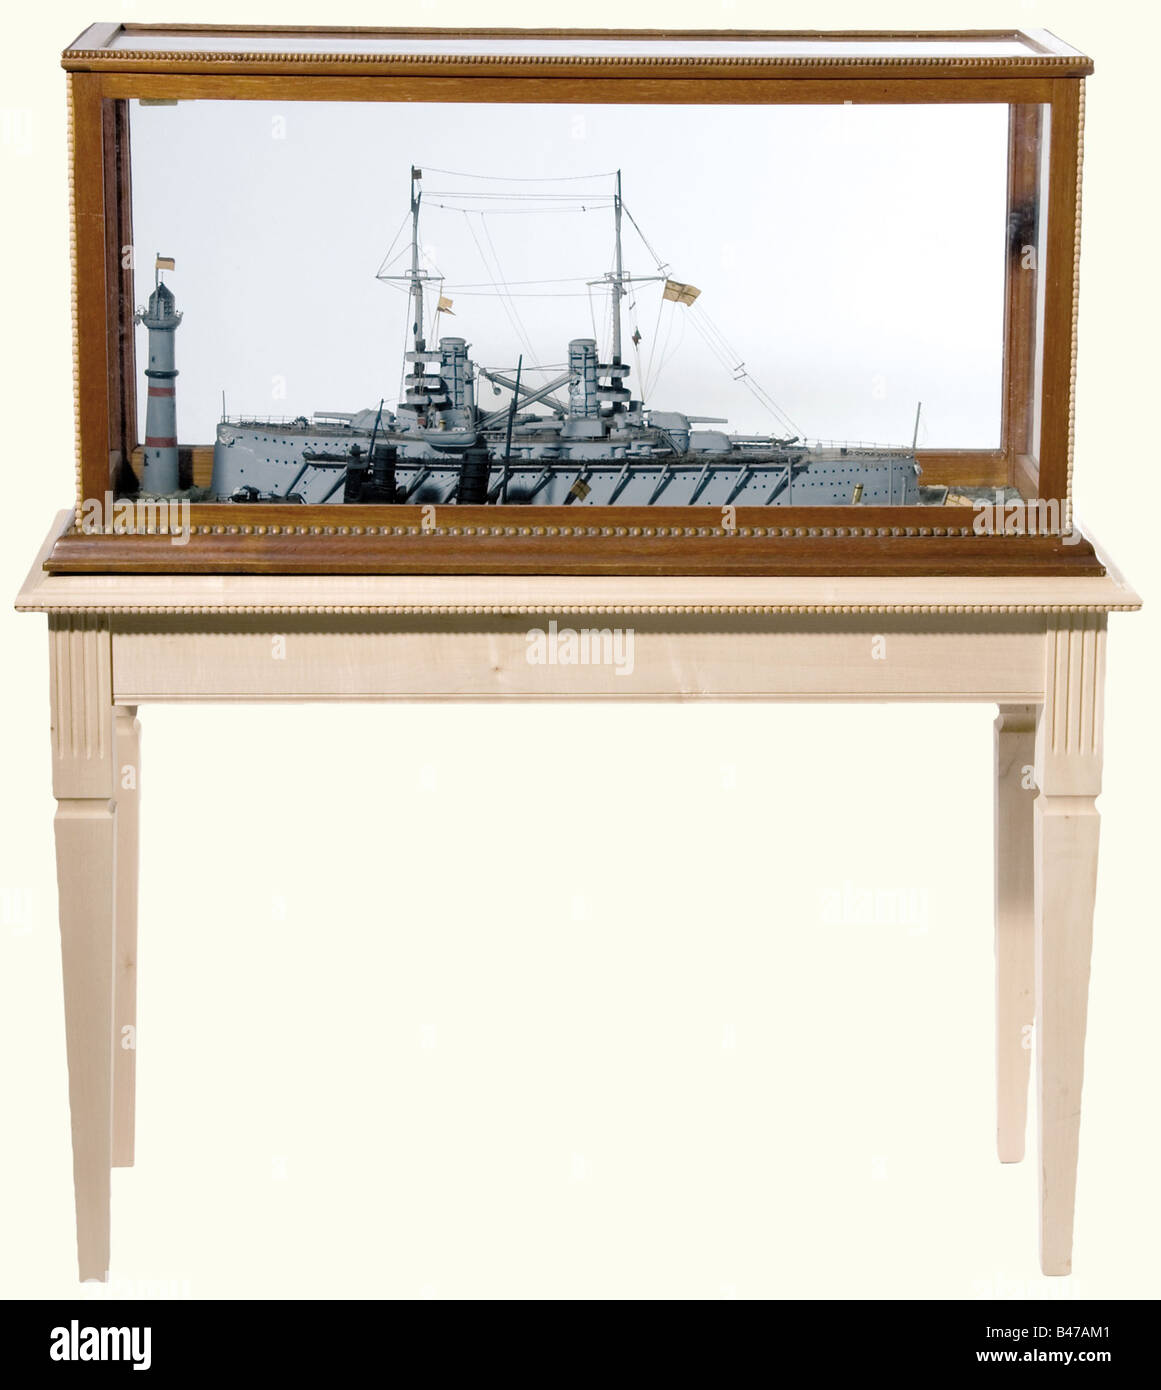 Pequeña 'Flotilla', un diorama del período anterior a la Primera Guerra Mundial. El diorama consiste en modelos de un crucero blindado imperial, un destructor de barcos torpedo, el U-boat, U-9, y un lanzamiento de vapor. Todos los modelos están en una superficie de agua cuidadosamente modelada con un modelo de faro. En un estuche acristalado en una mesa de visualización personalizada. Grietas por edad en la superficie del agua. Dimensiones del estuche: 108 x 52 x 29 cm. Altura, incluida la mesa de visualización de 126 cm. Diorama decorativo de una flotilla imperial del período alrededor de 1910. Histórico, histórico, 1910s, siglo 20, marina, naval fo, Foto de stock